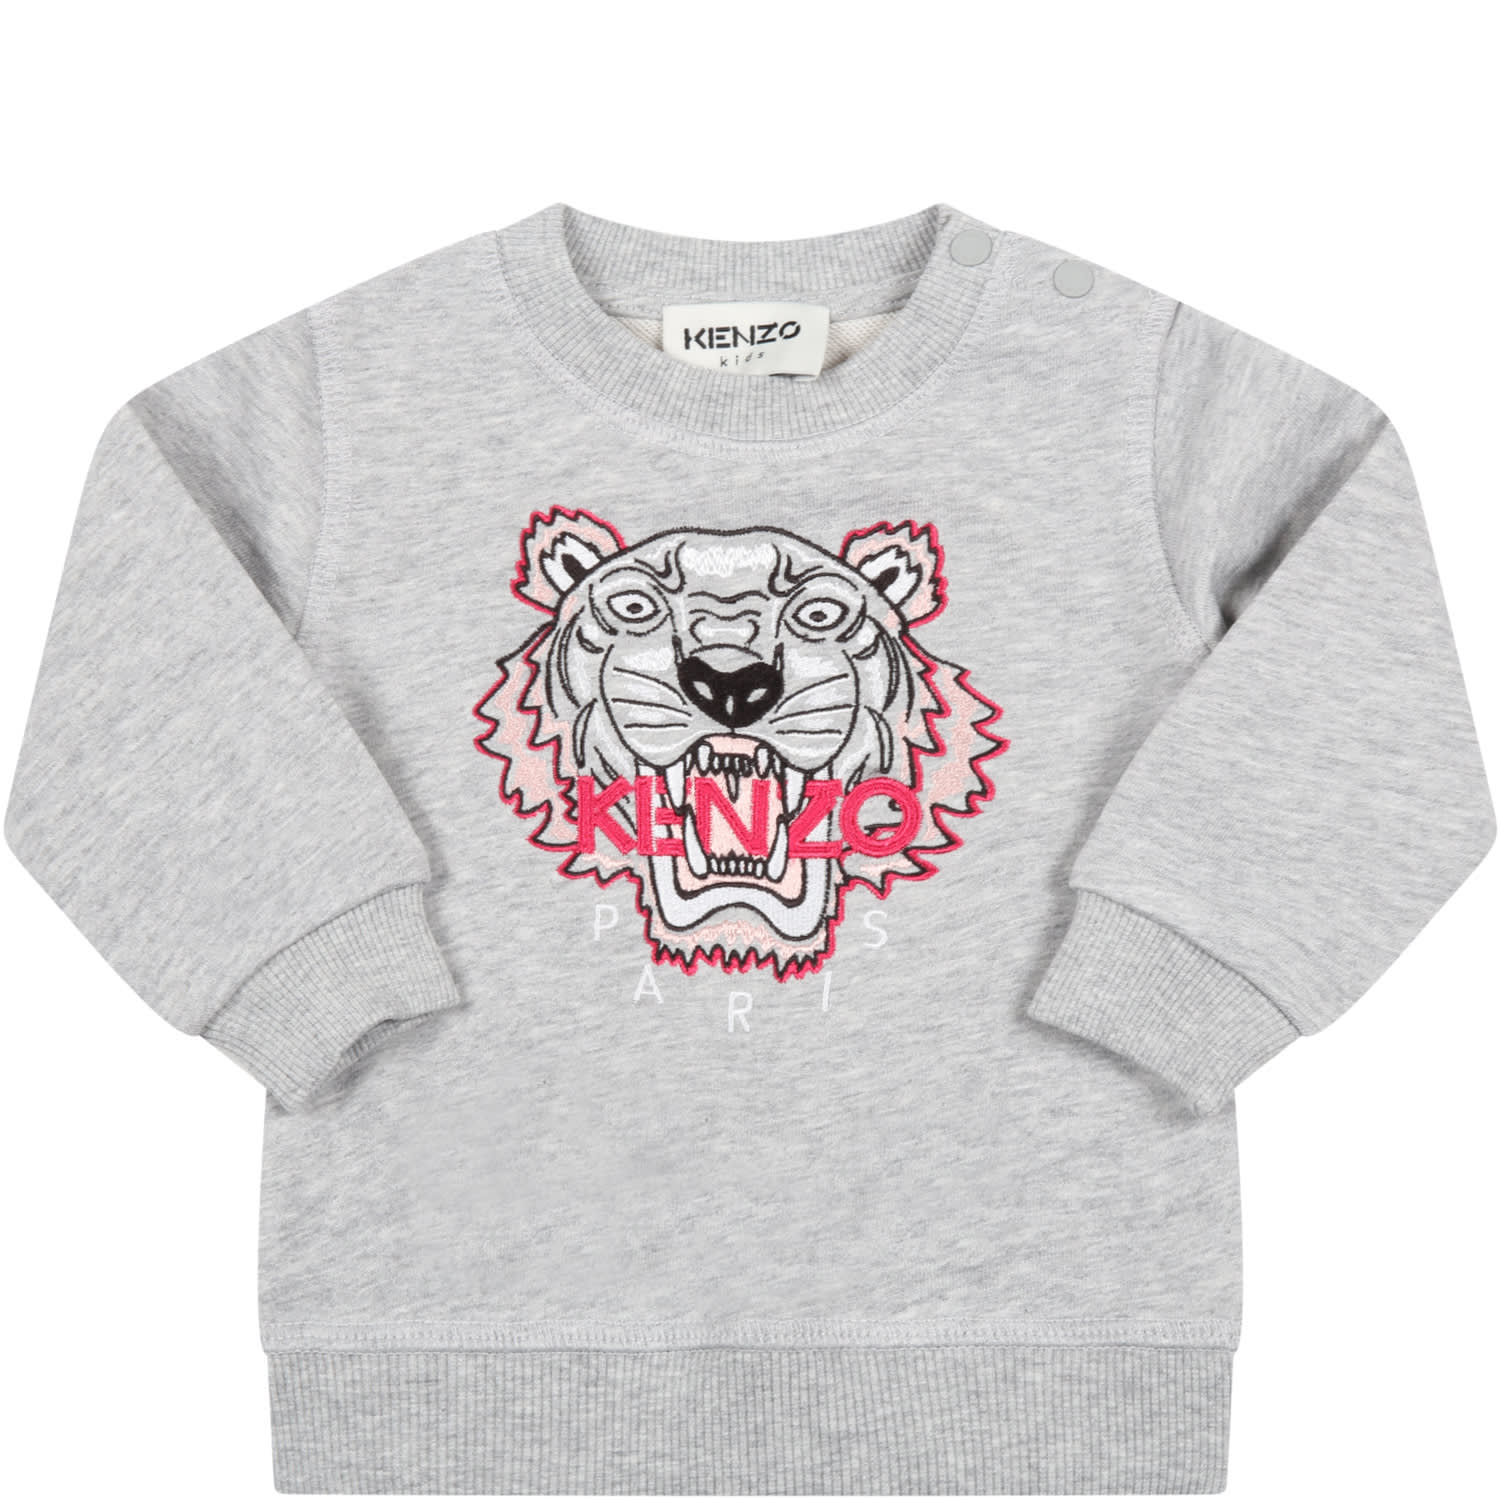 Kenzo Kids Grey Sweatshirt For Baby Girl With Tiger